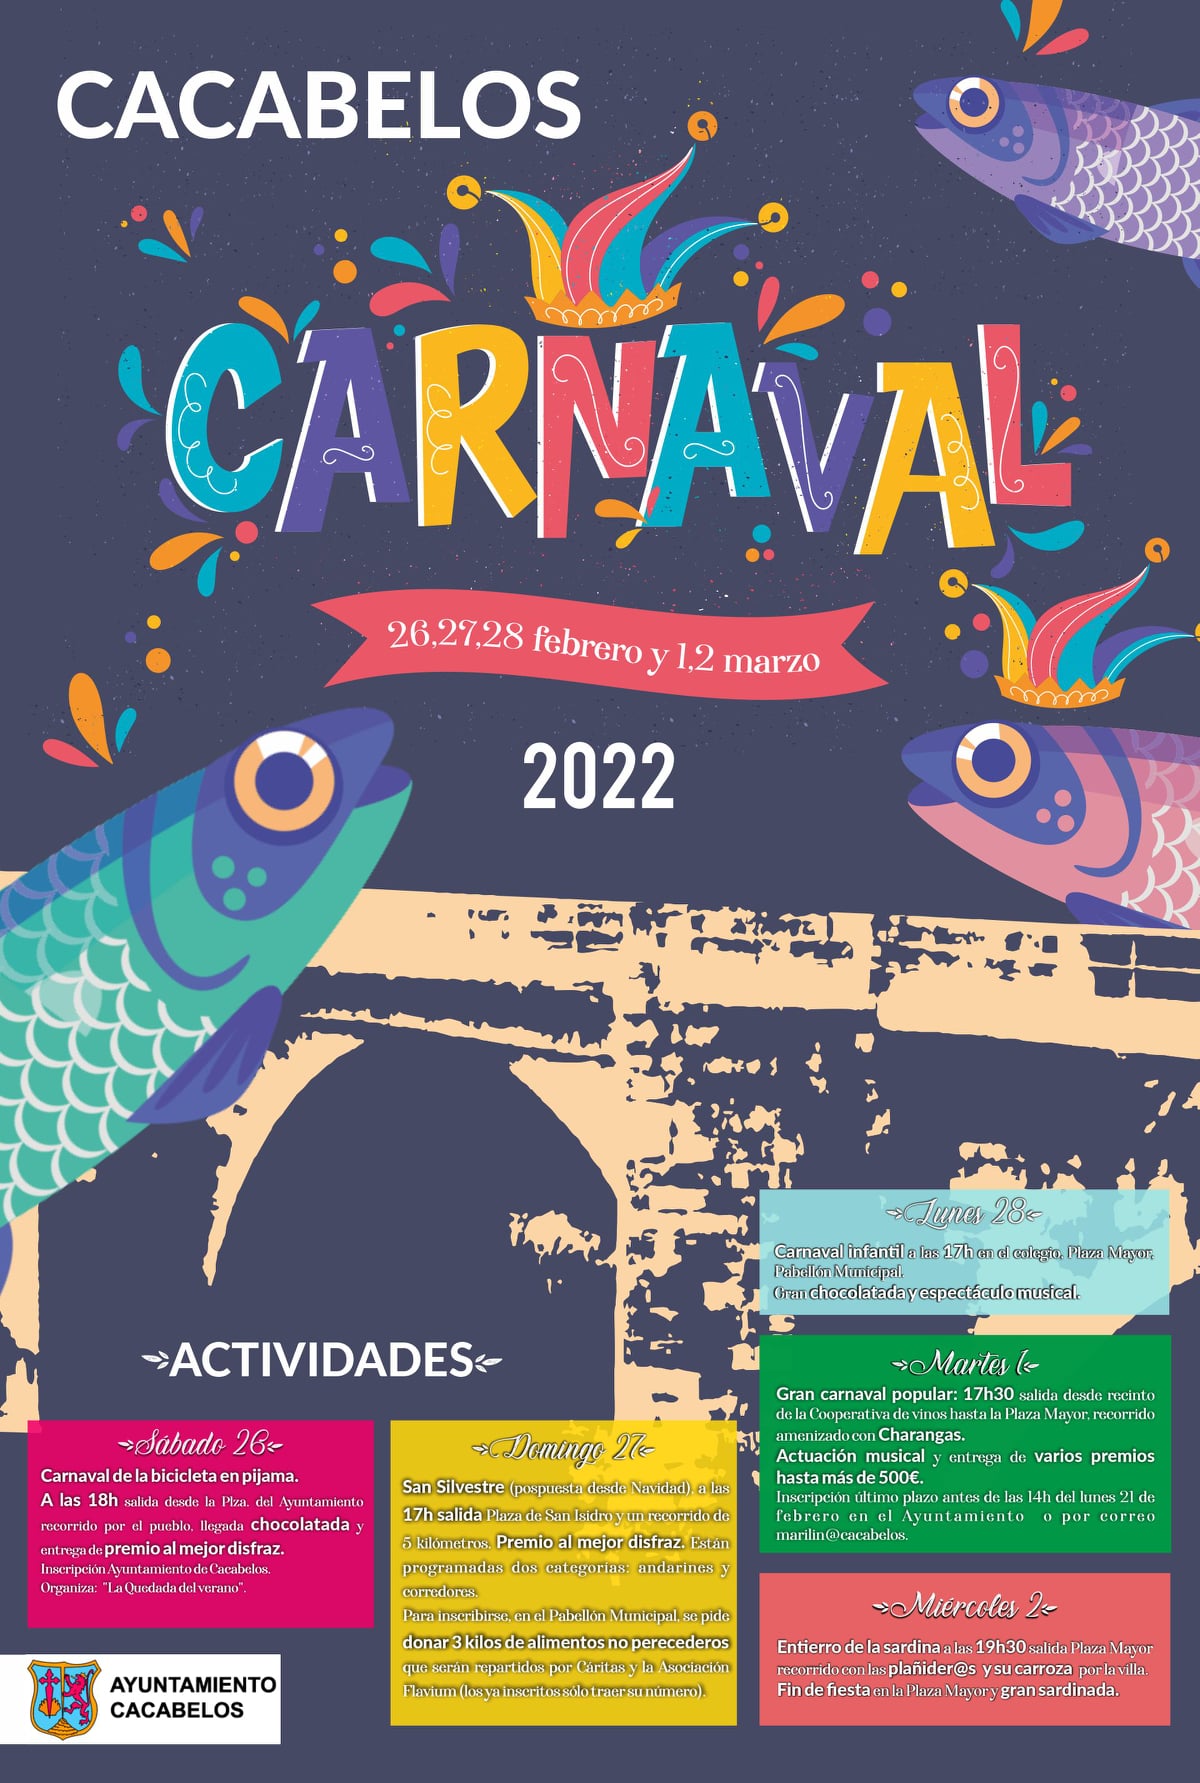 Carnaval en Cacabelos 2022. Actividades organizadas en la Villa del Cúa 2